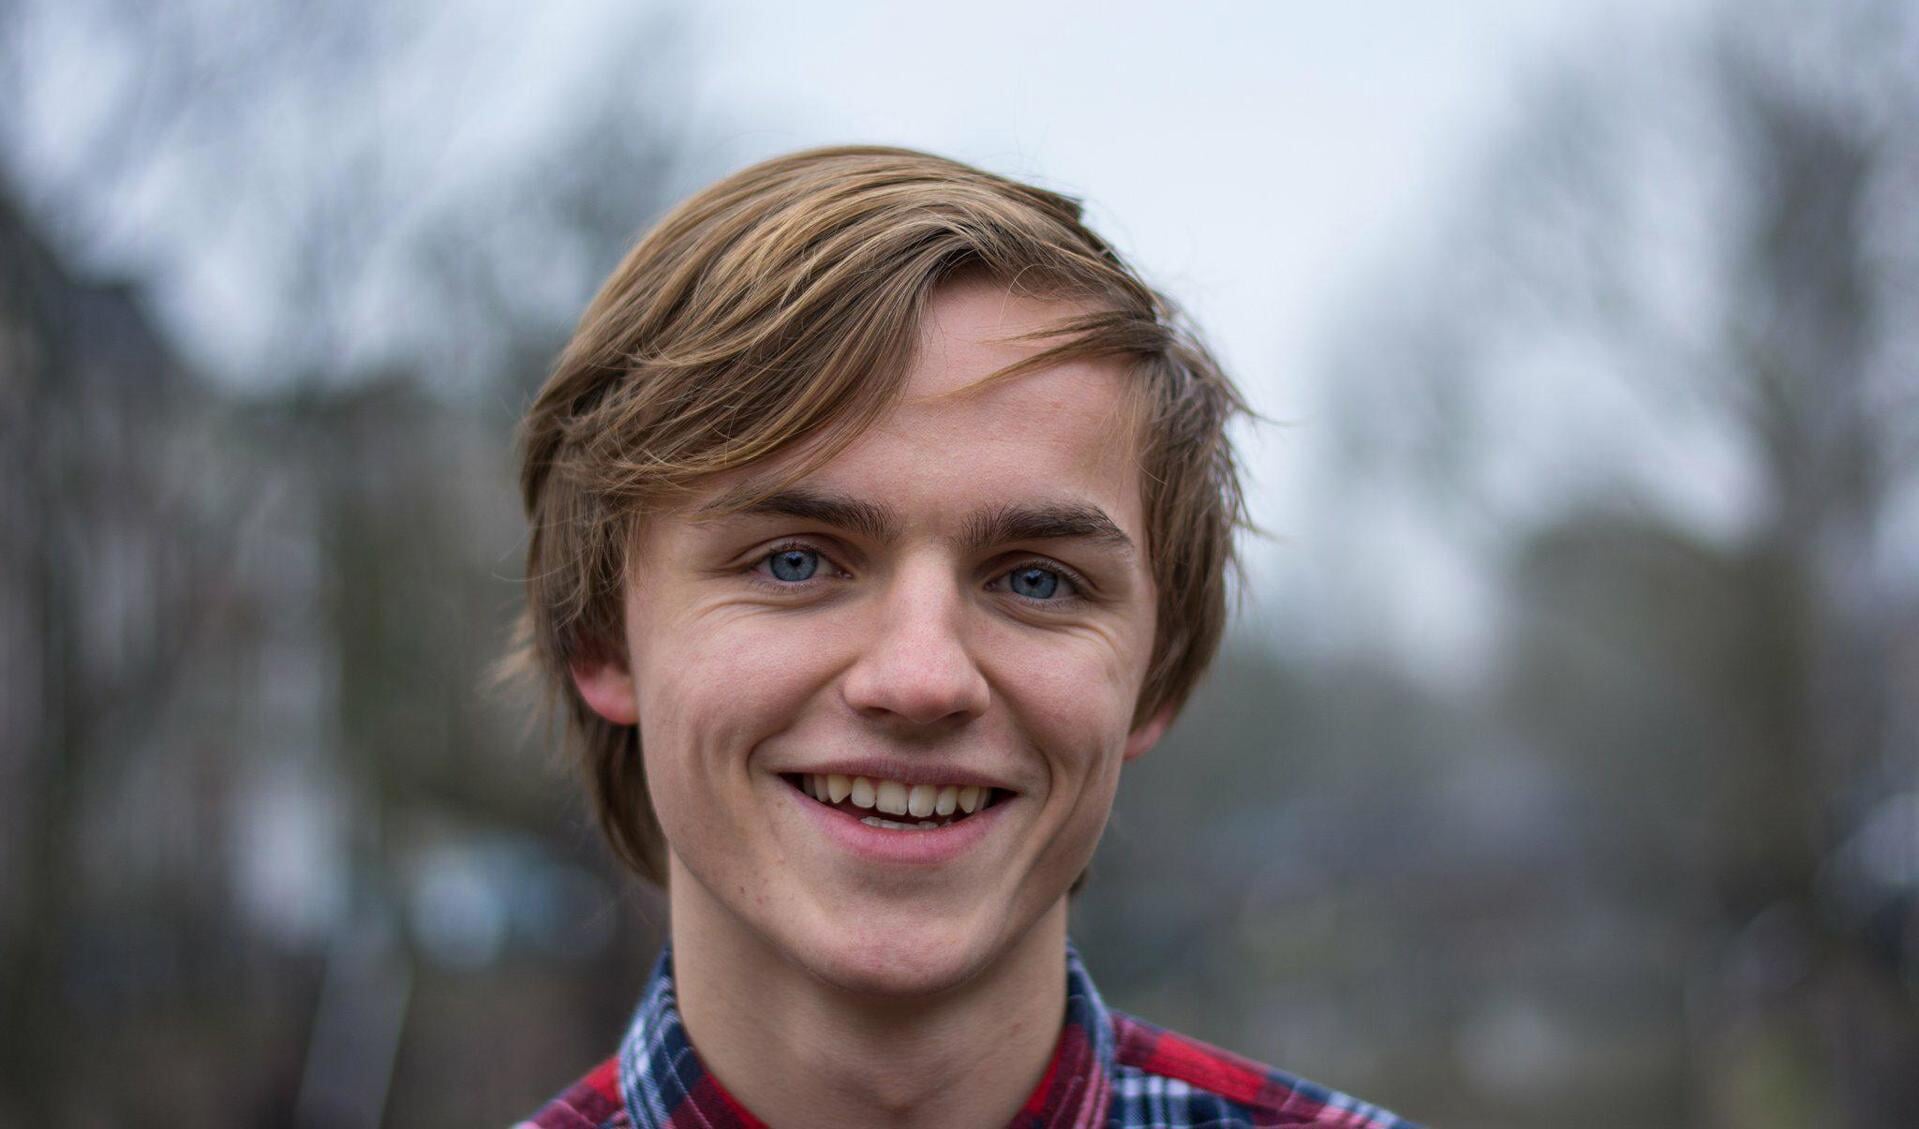 De 18-jarige Elias Marseille wordt donderdag als raadslid van Texel geïnstalleerd.